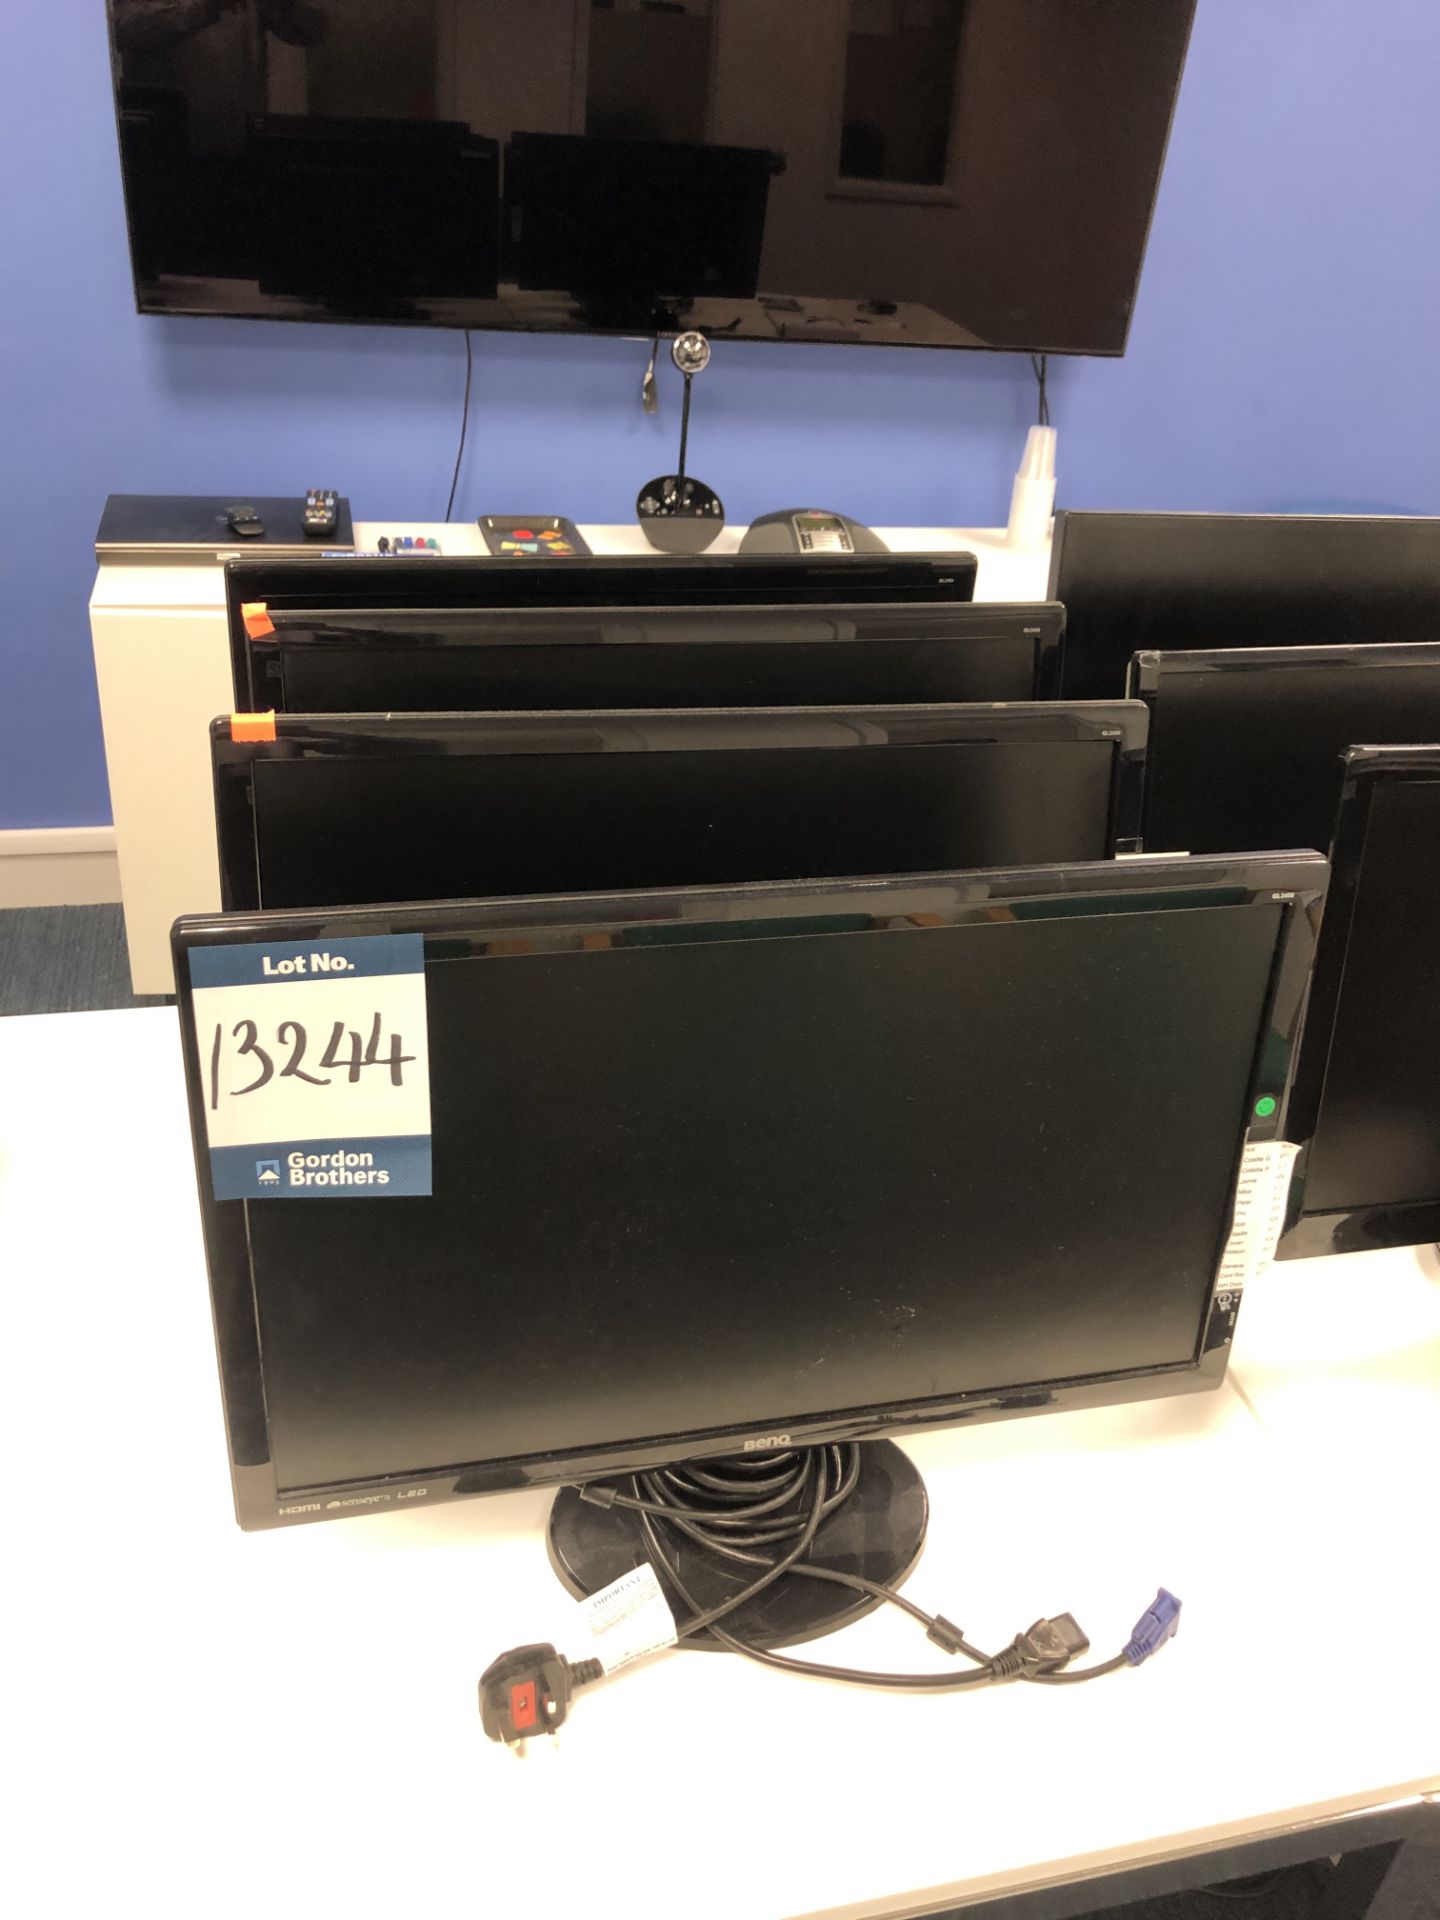 4x No. Benq, GL2450 24" monitors